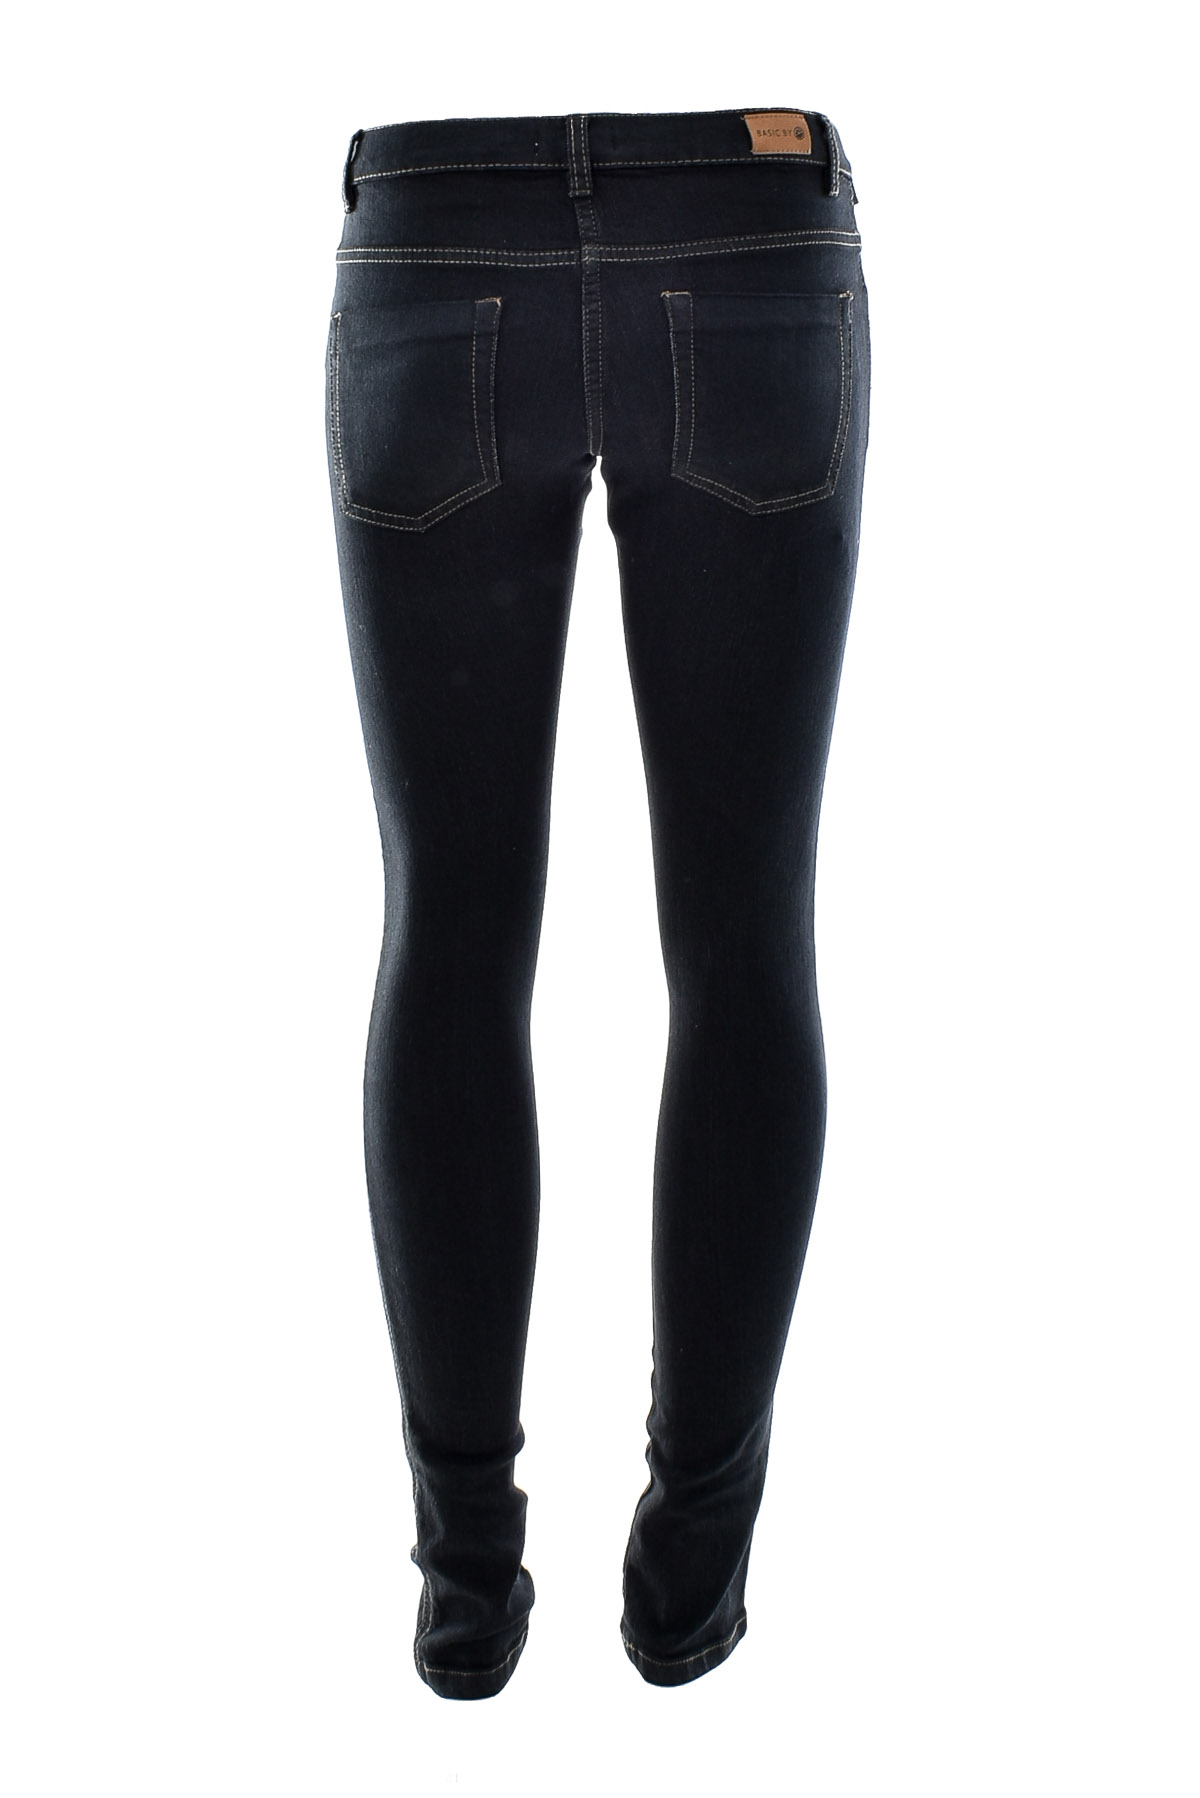 Jeans pentru fată - BASIC BY LEMON BERET - 1